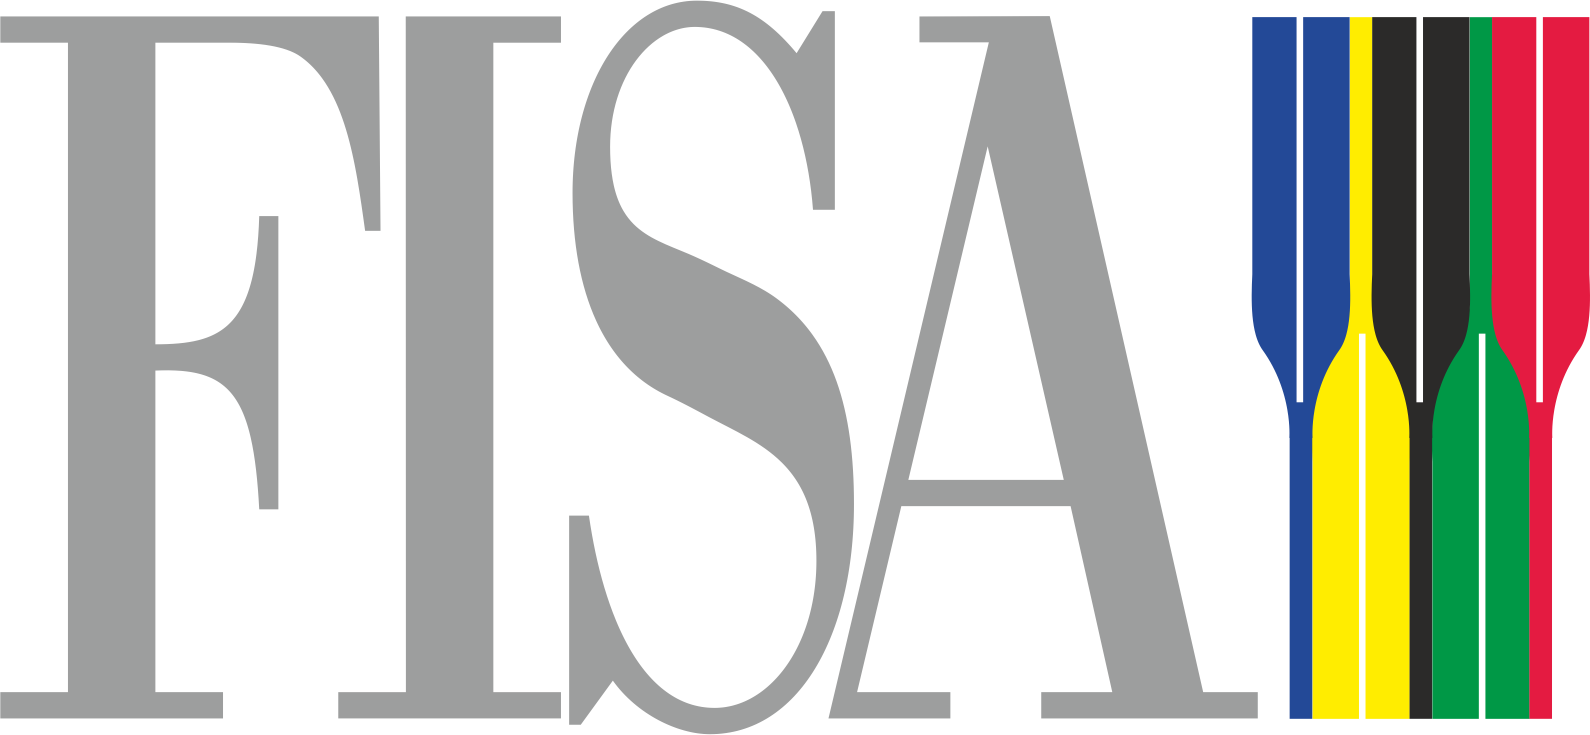 Как называется международная федерация. Международная Федерация Академической гребли логотип. Эмблема FISA. Федерация гребного спорта логотип. FISA гребля.